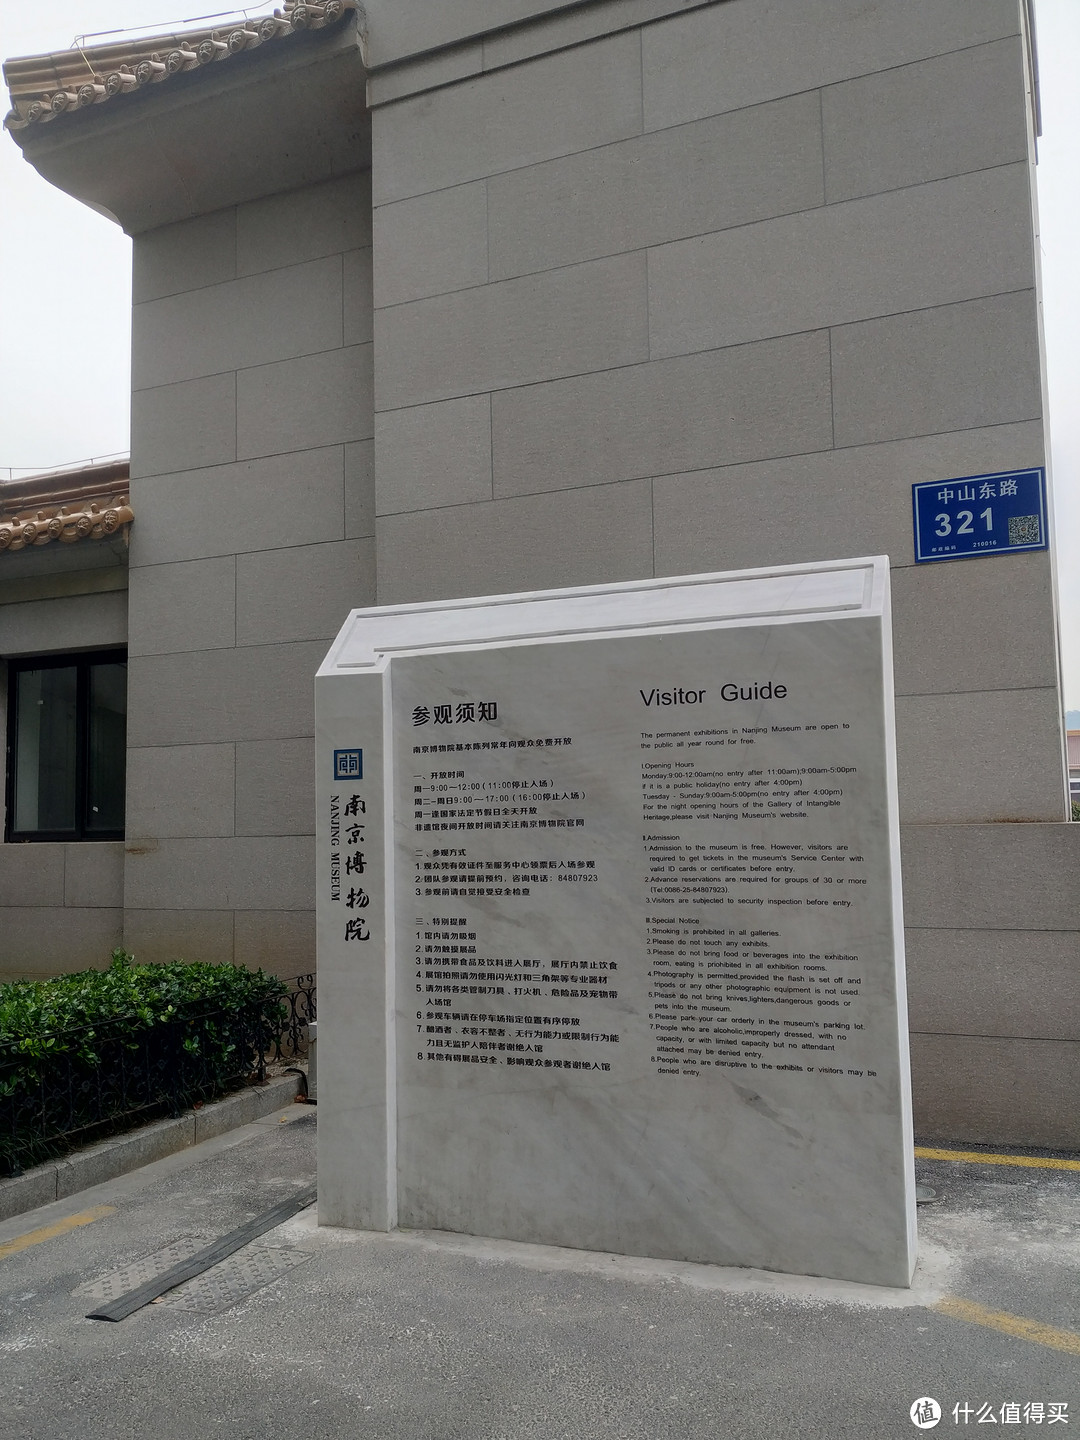 《国家宝藏》系列之南京博物院参观及文创周边购入指南